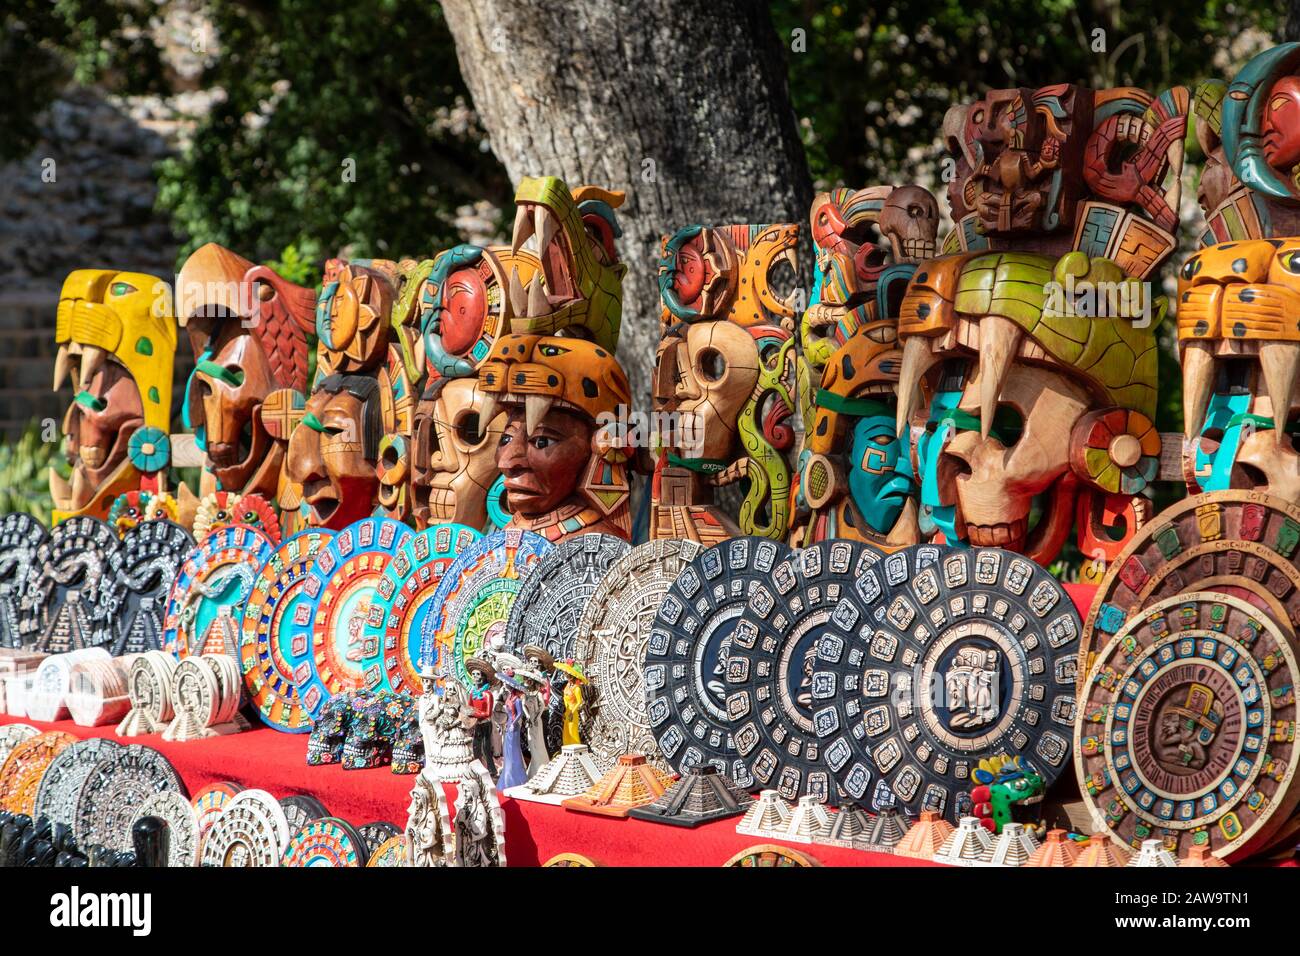 Tipici souvenir in legno intagliato in un mercato messicano locale a Chichen Itza, penisola dello Yucatan, Messico. Foto Stock